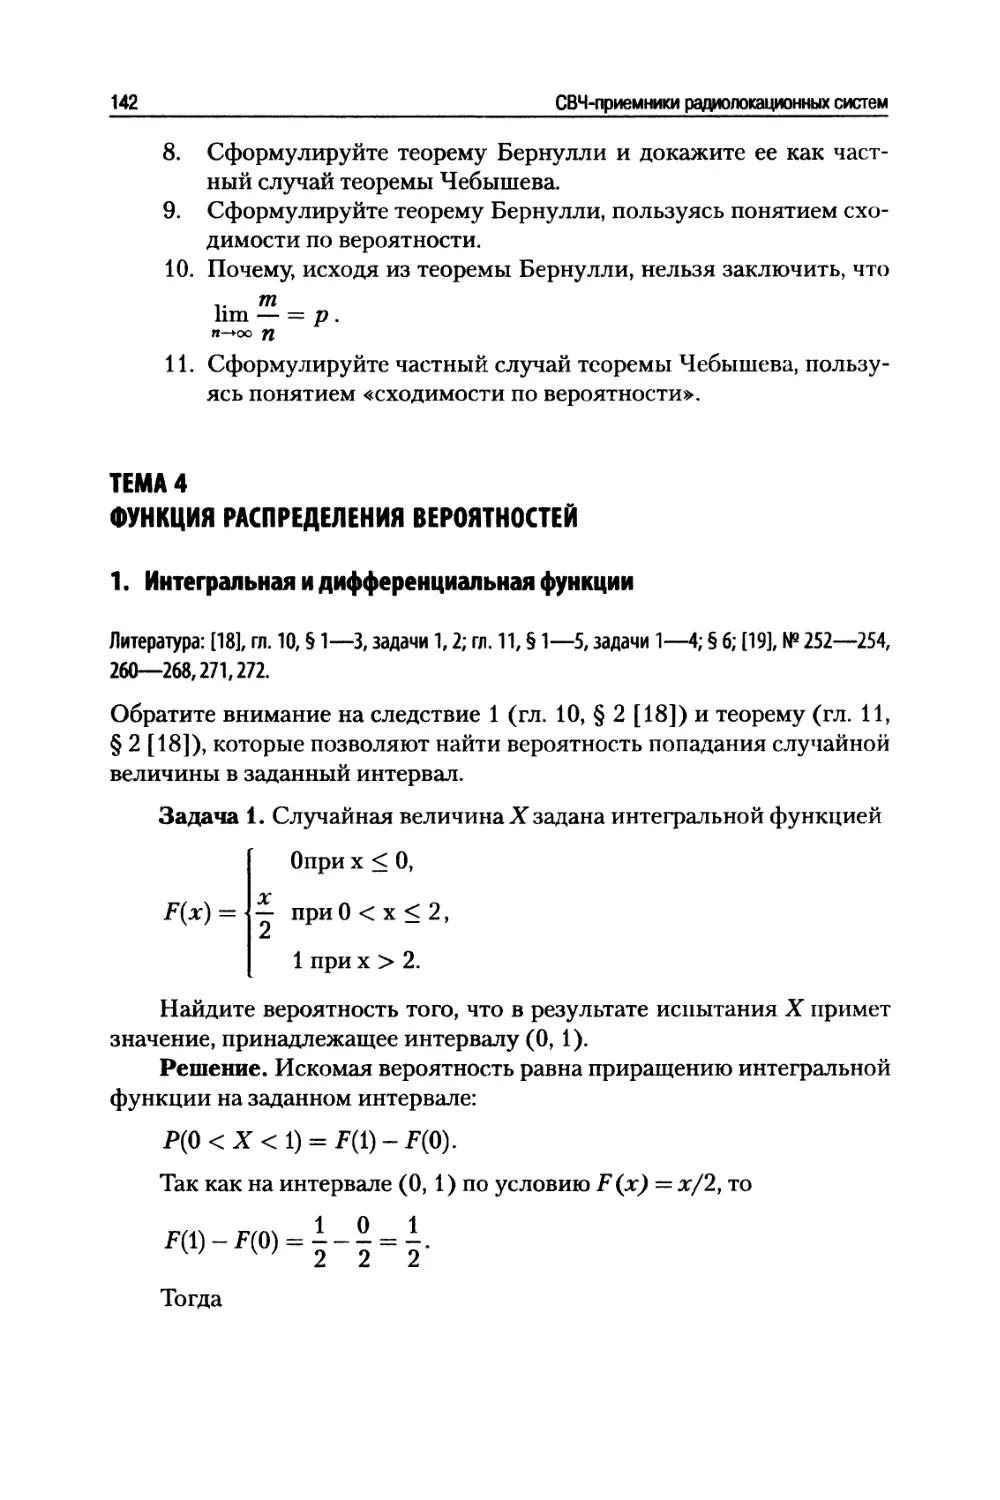 Тема 4. Функция распределения вероятностей
Интегральная и дифференциальная функции